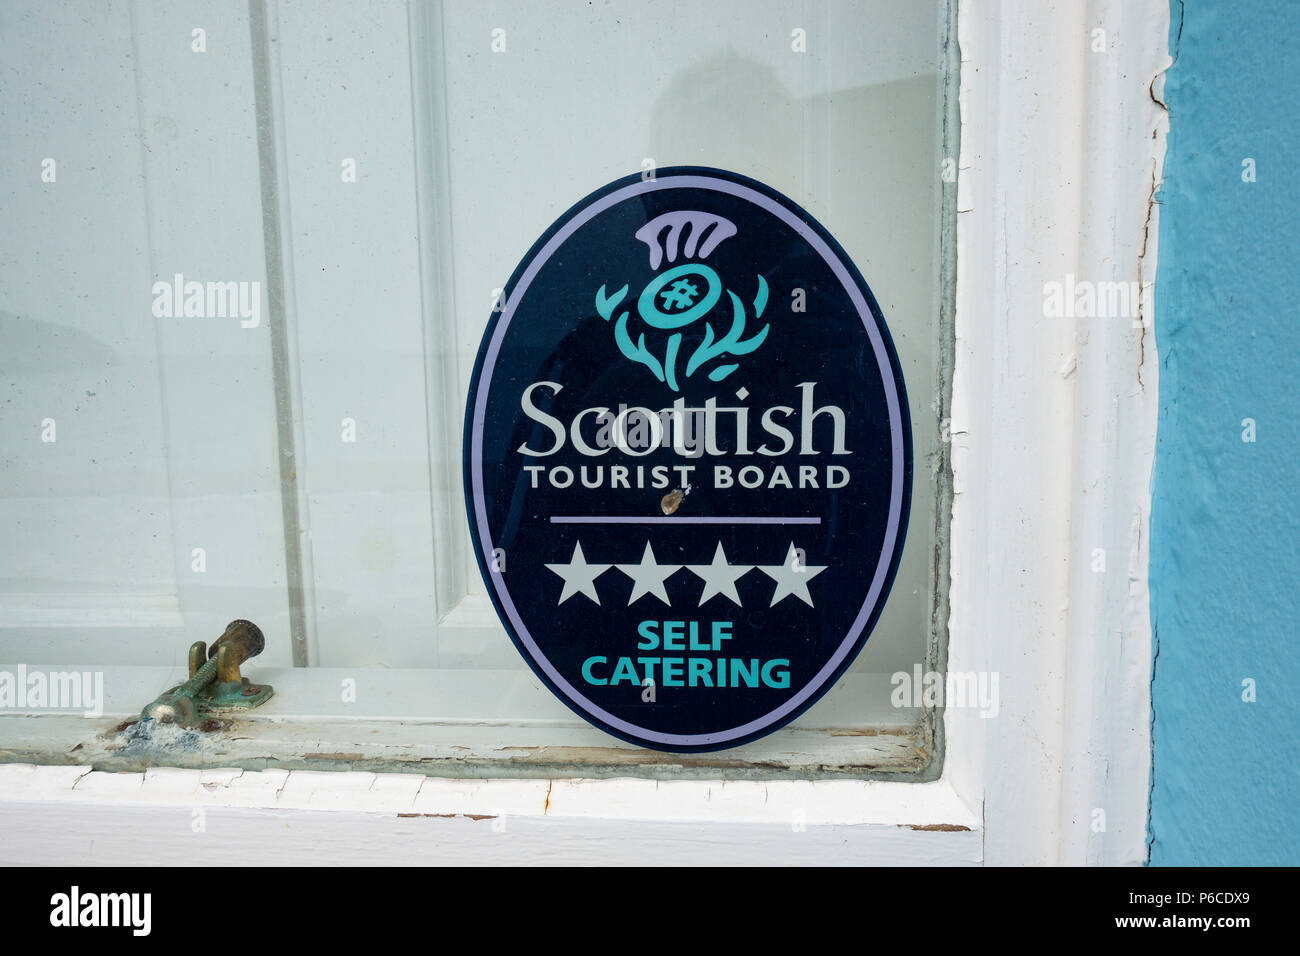 Im Gästehaus Fenster in schottischen Dorf, es ist ein self catering Guest House und ein Teil der Scottish Tourist Board Regelung Zeichen Stockfoto